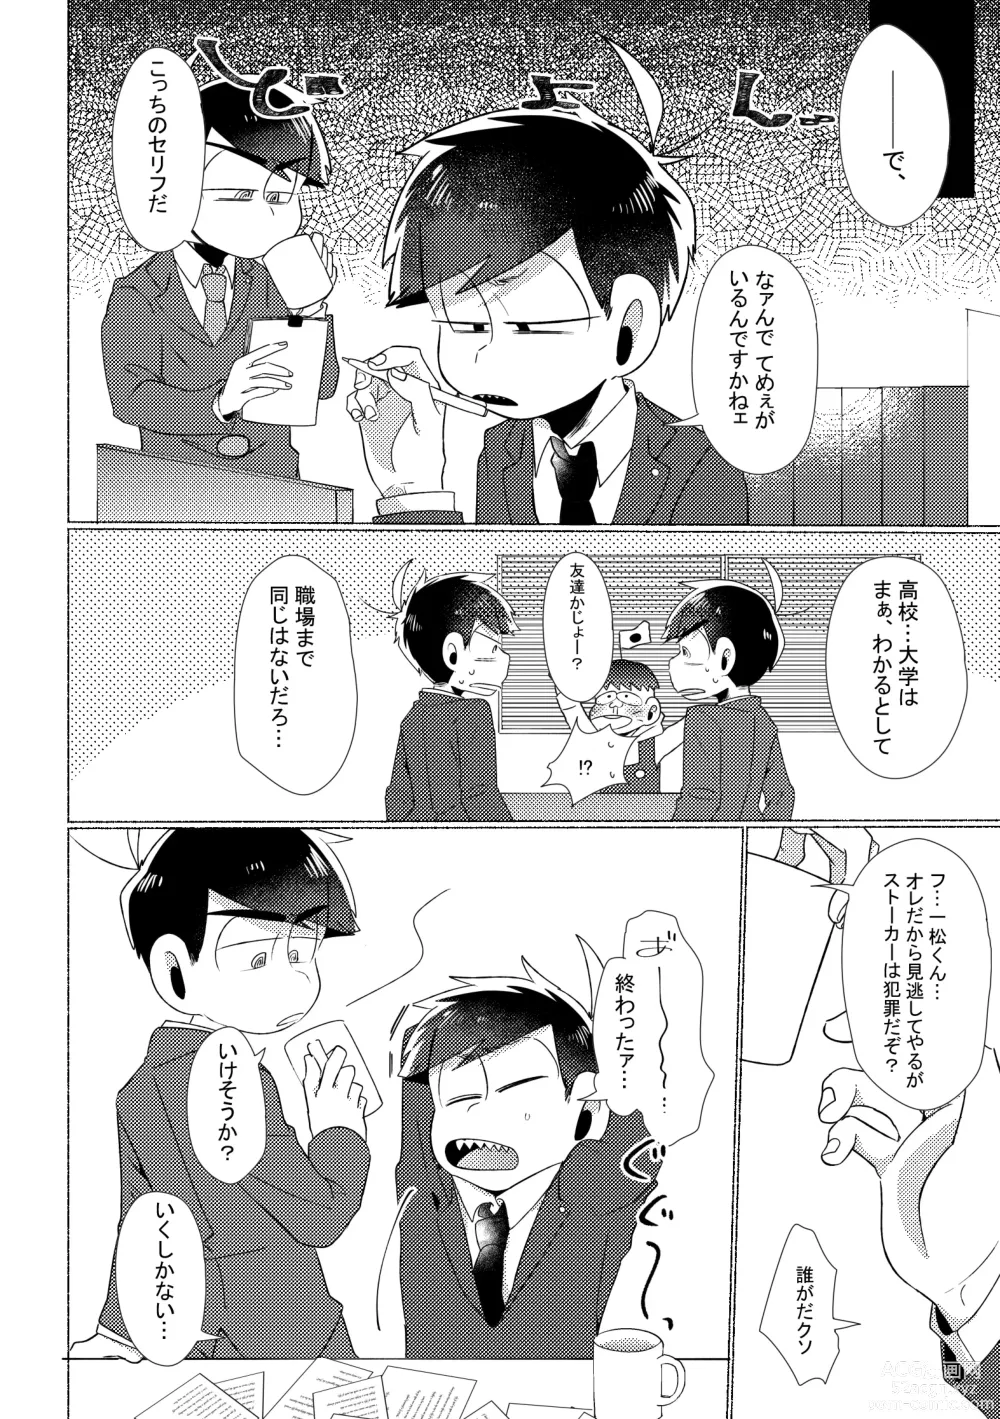 Page 7 of doujinshi Aperitif